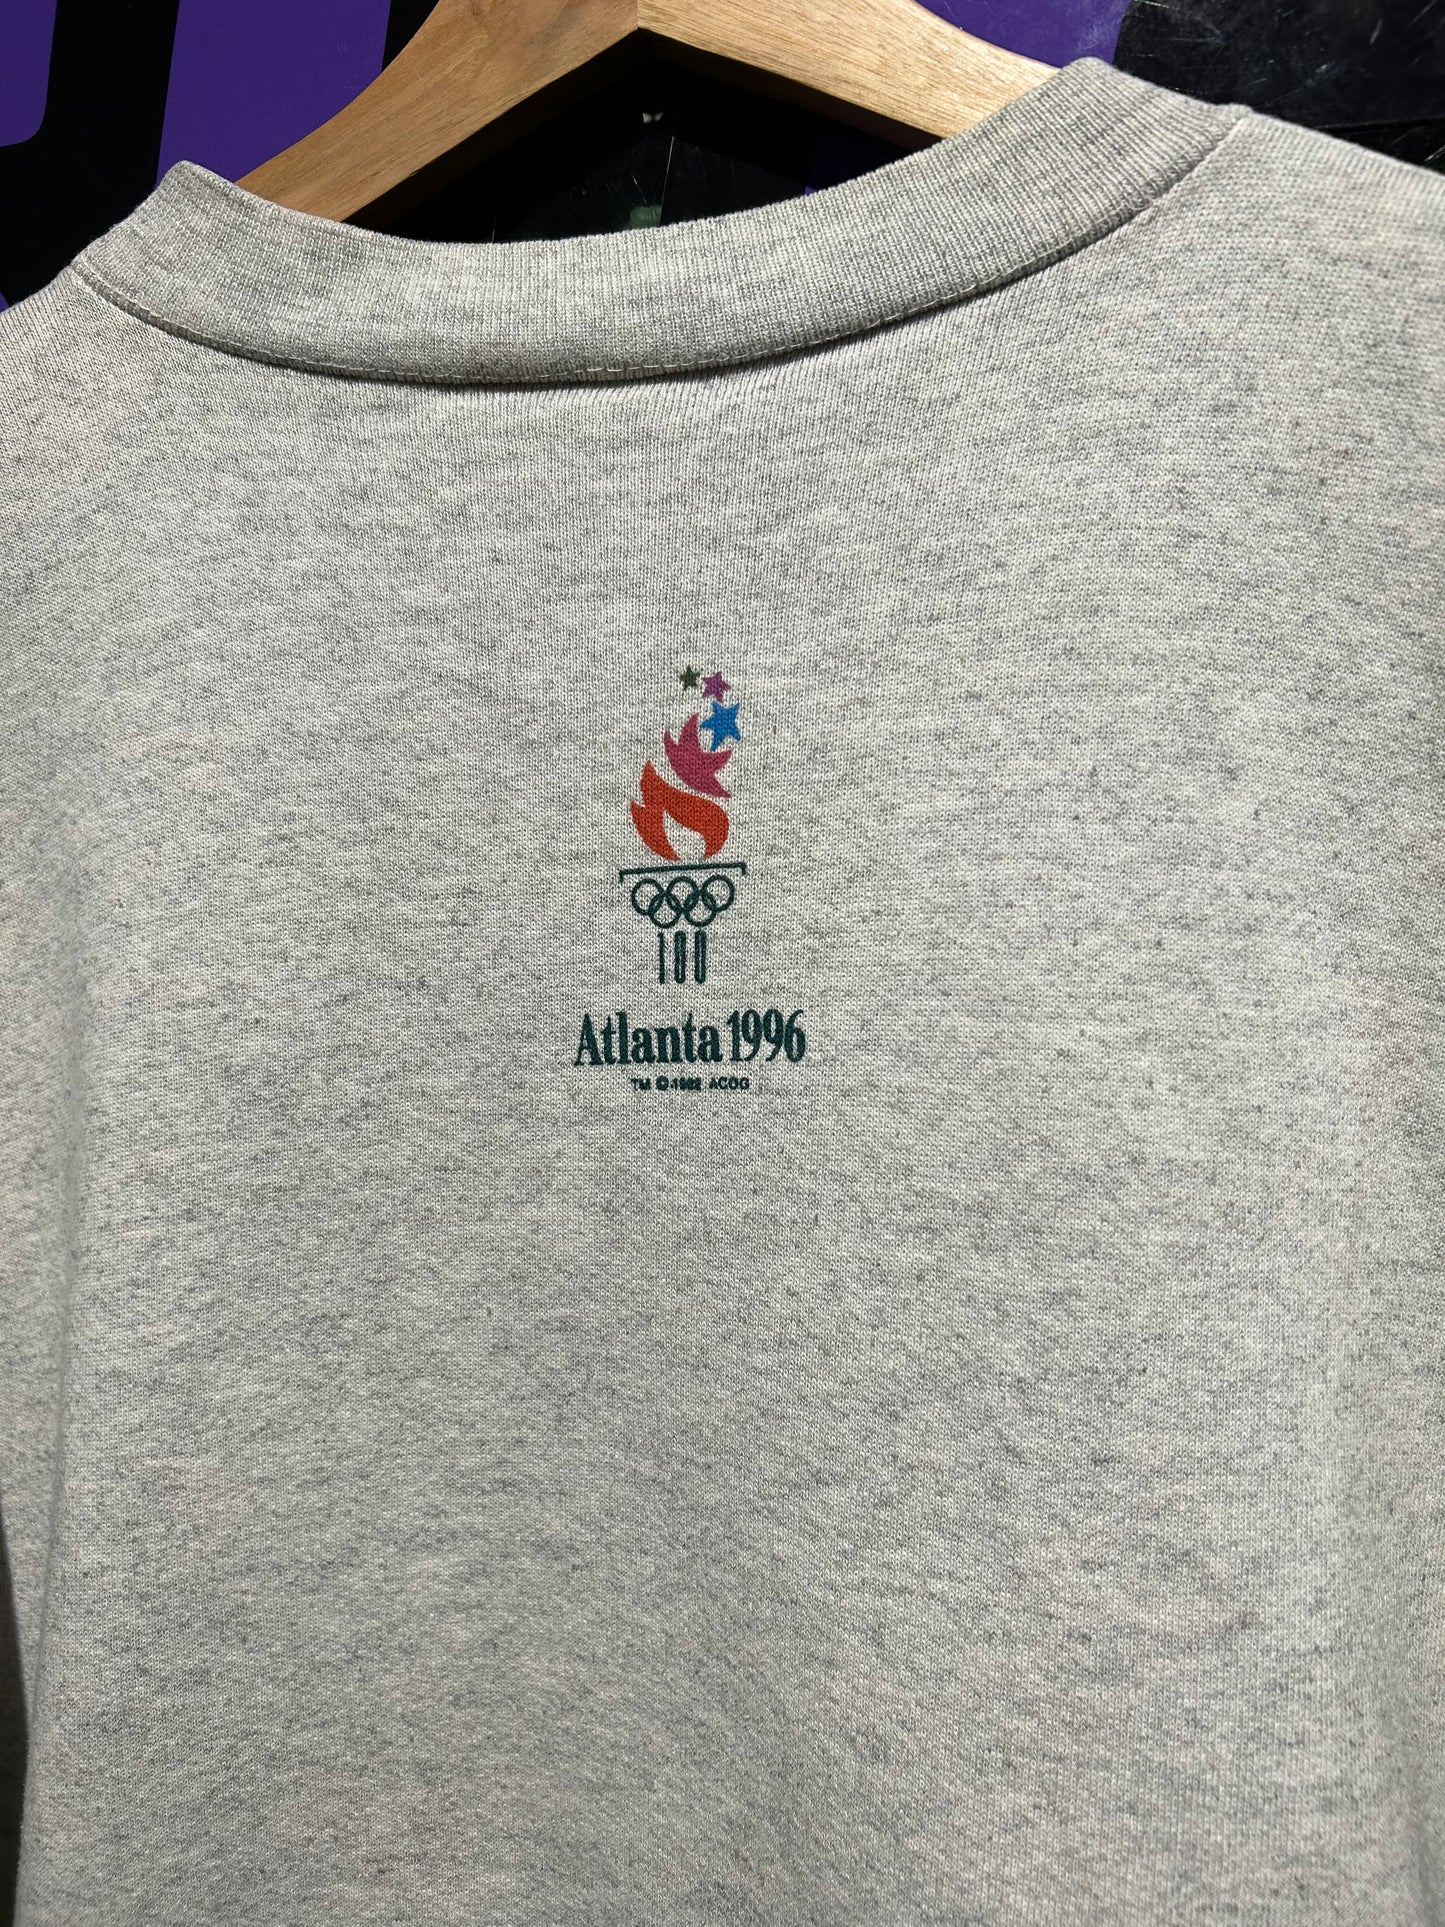 1996 Atlanta Olympics Mascot ‘WhatIzIt’ Crewneck. Size Large